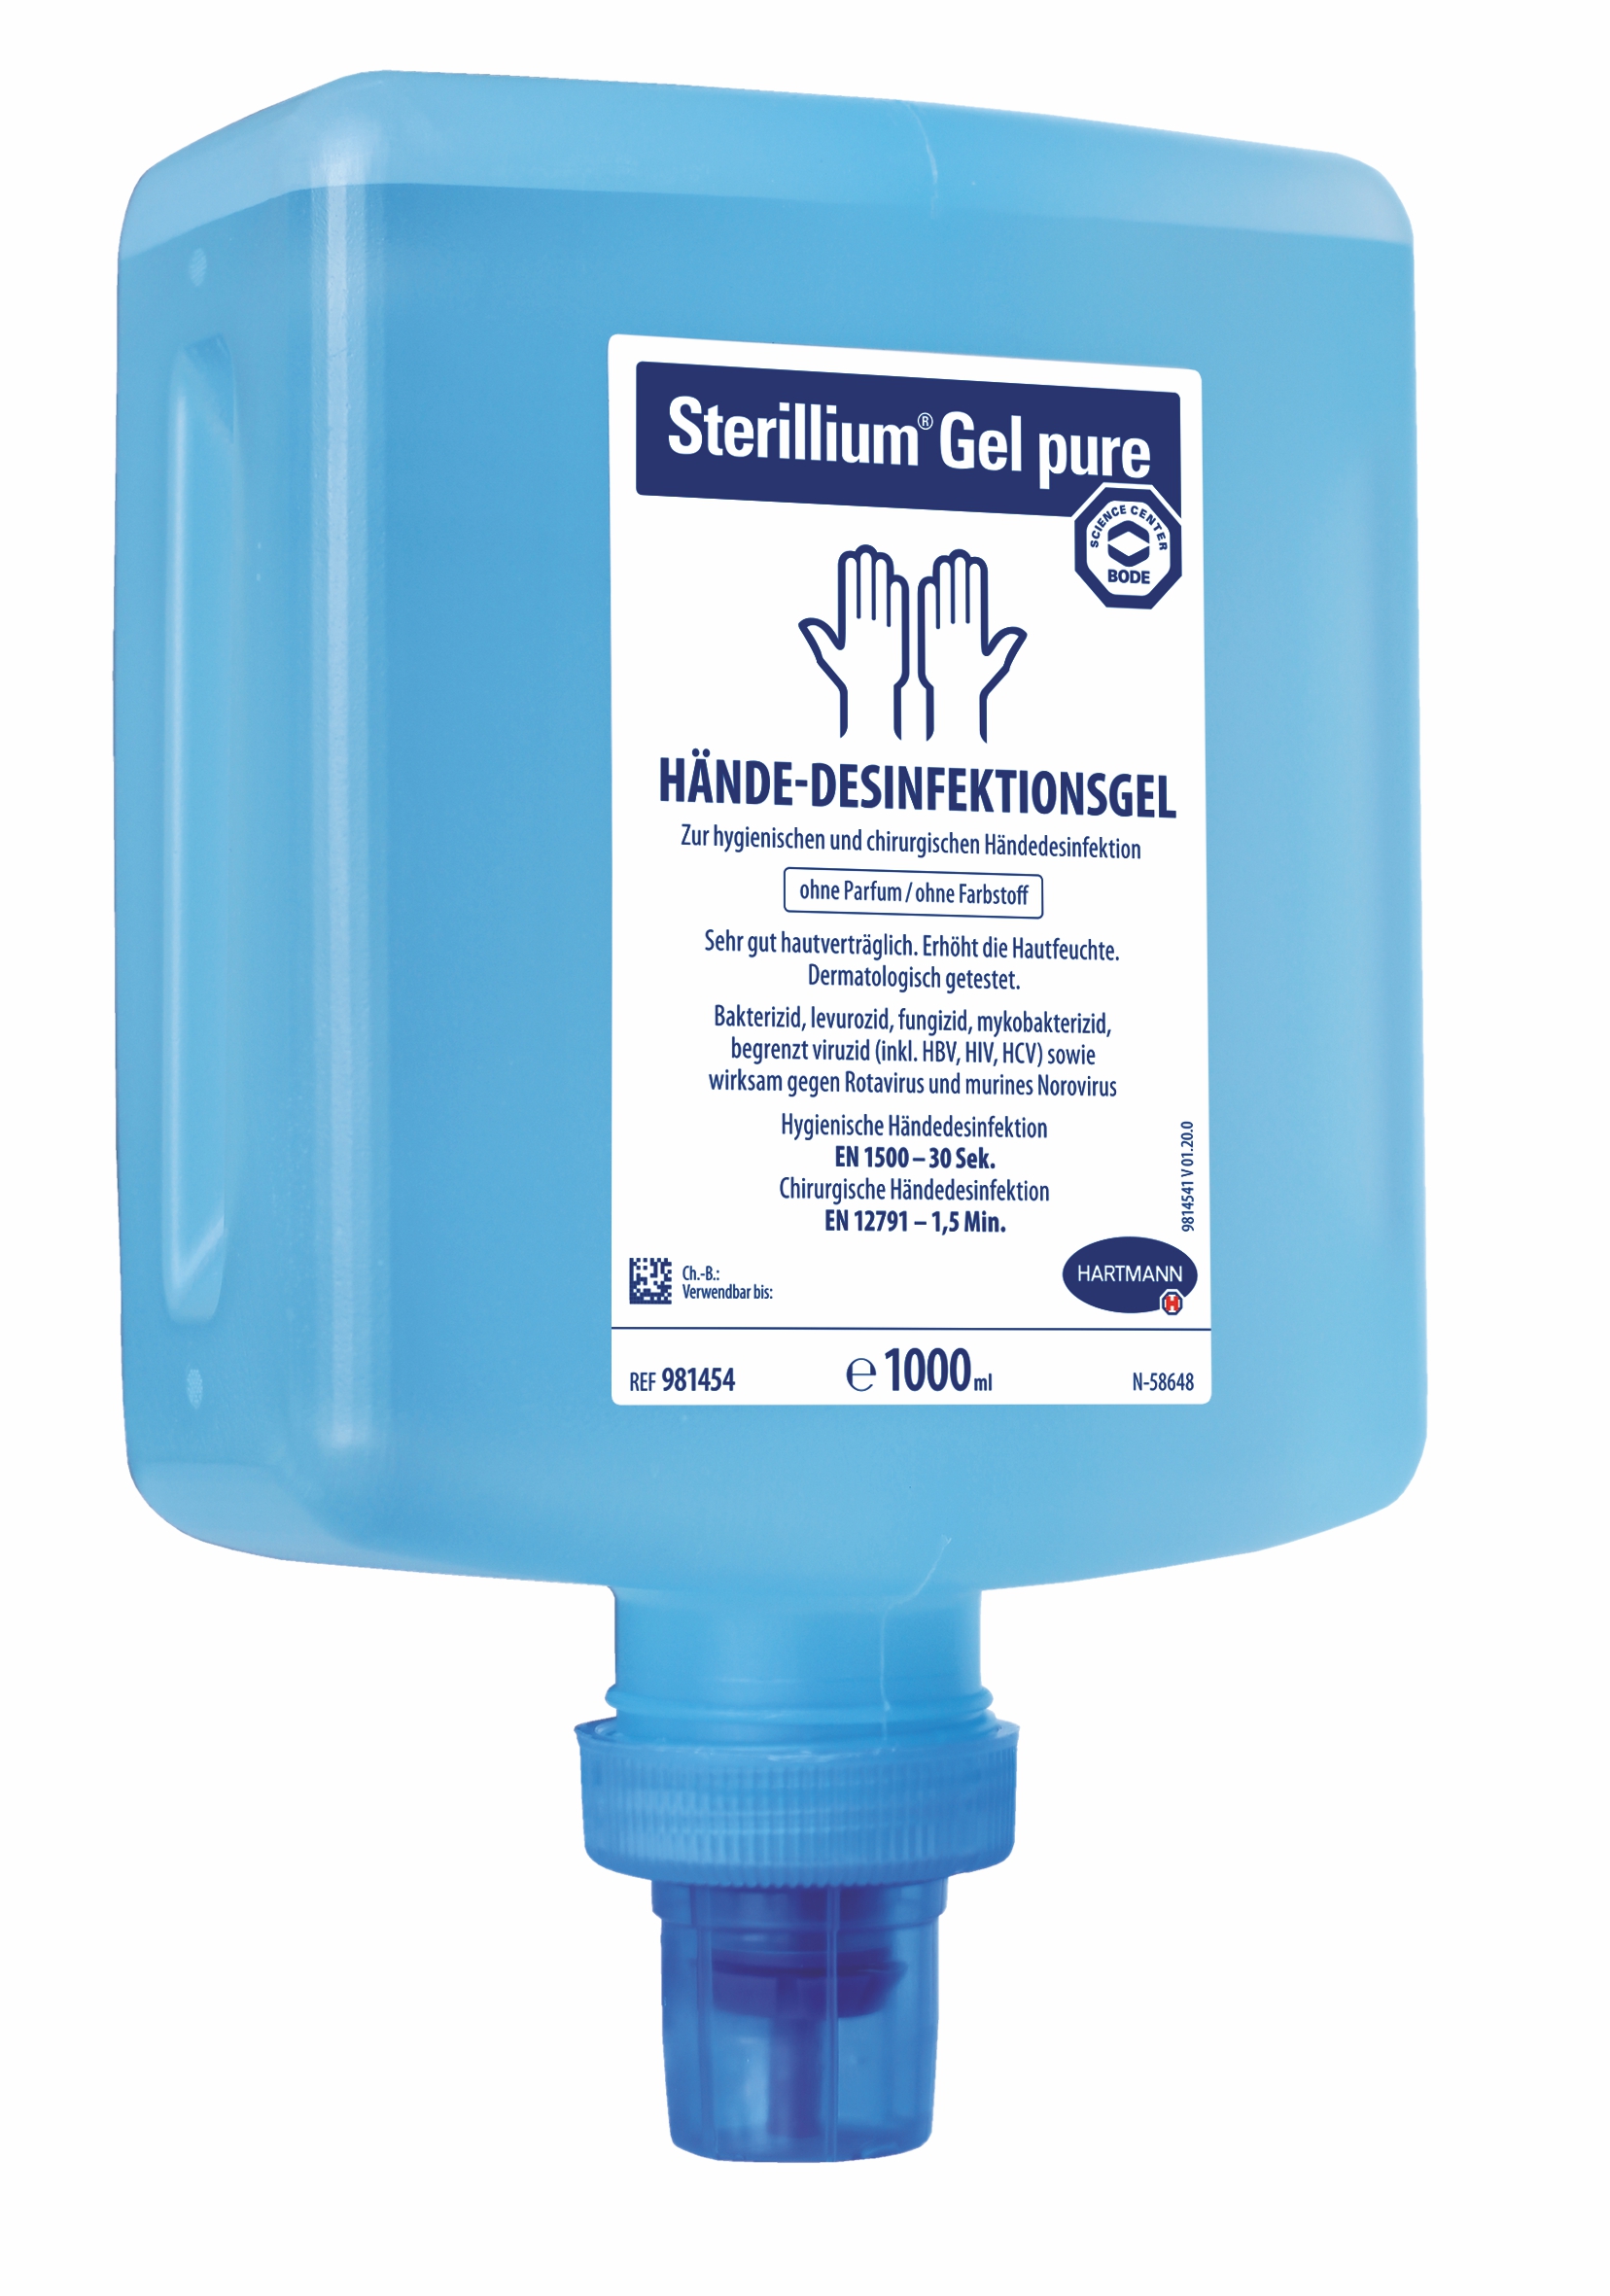 Bode Sterillium Gel pure Hände-Desinfektionsgel